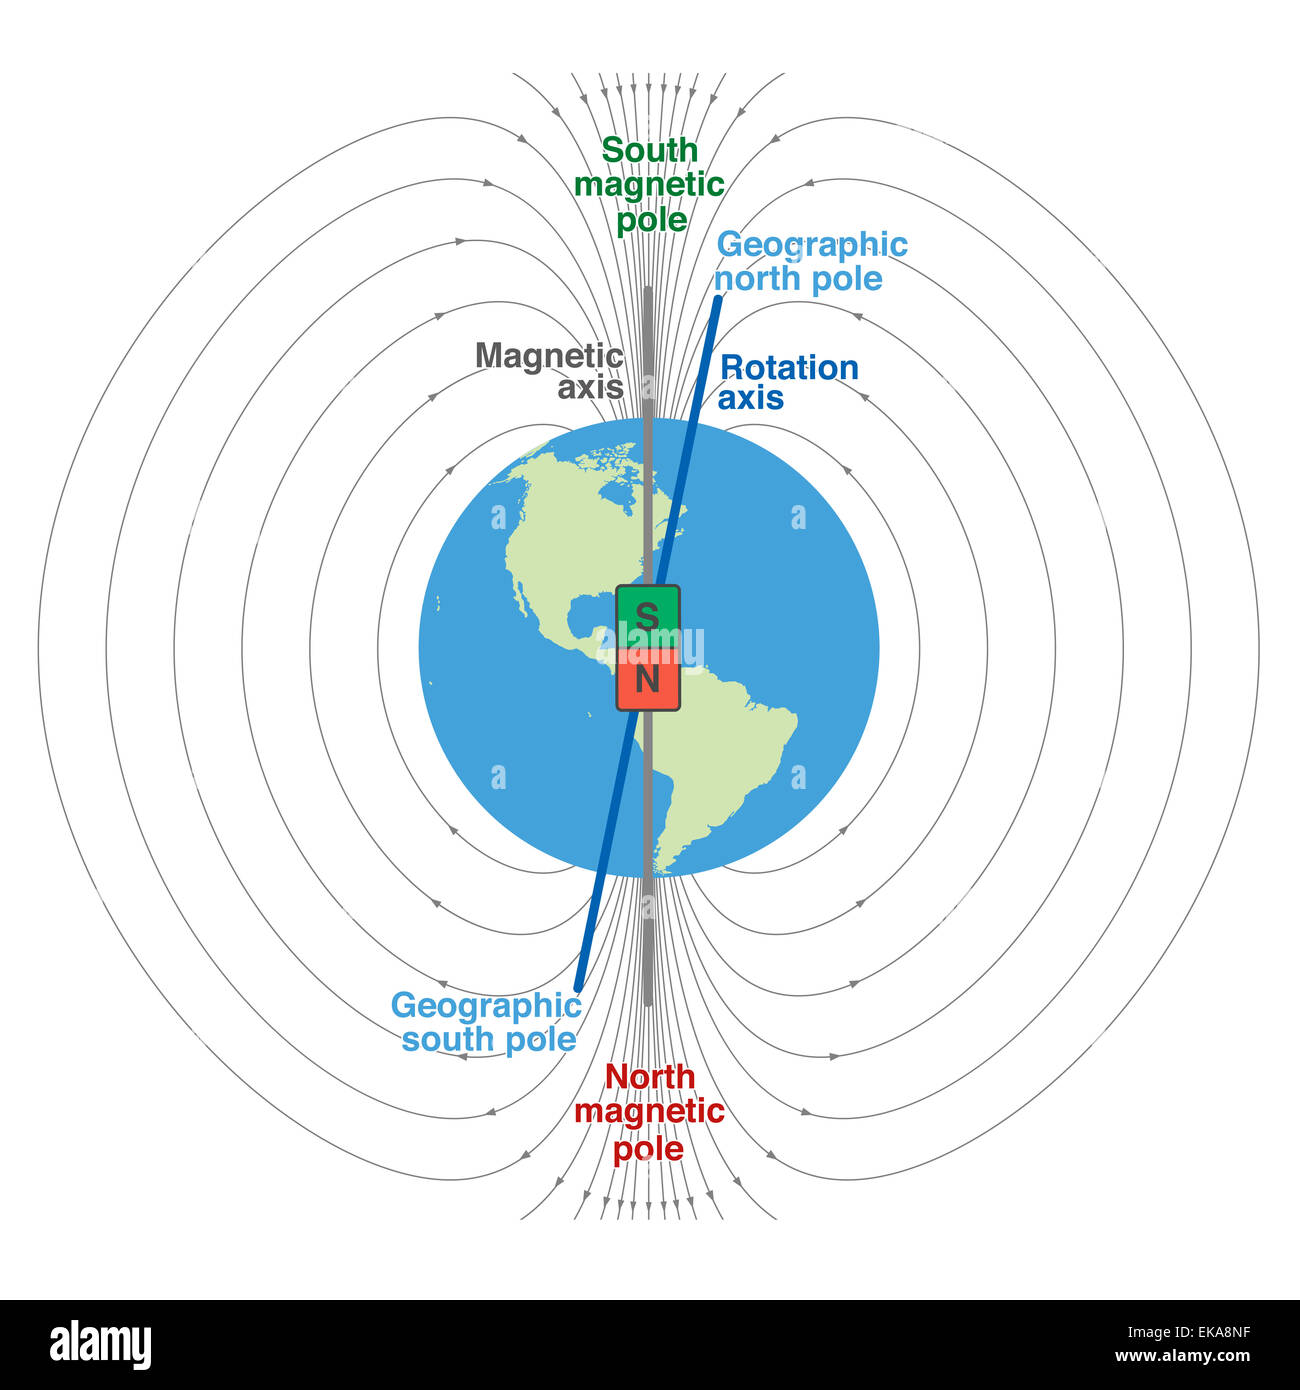 Geomagnetische Feld der Erde - wissenschaftliche Darstellung mit  geographischen und magnetischen Nordpol und Südpol, magnetische Achse und  ro Stockfotografie - Alamy